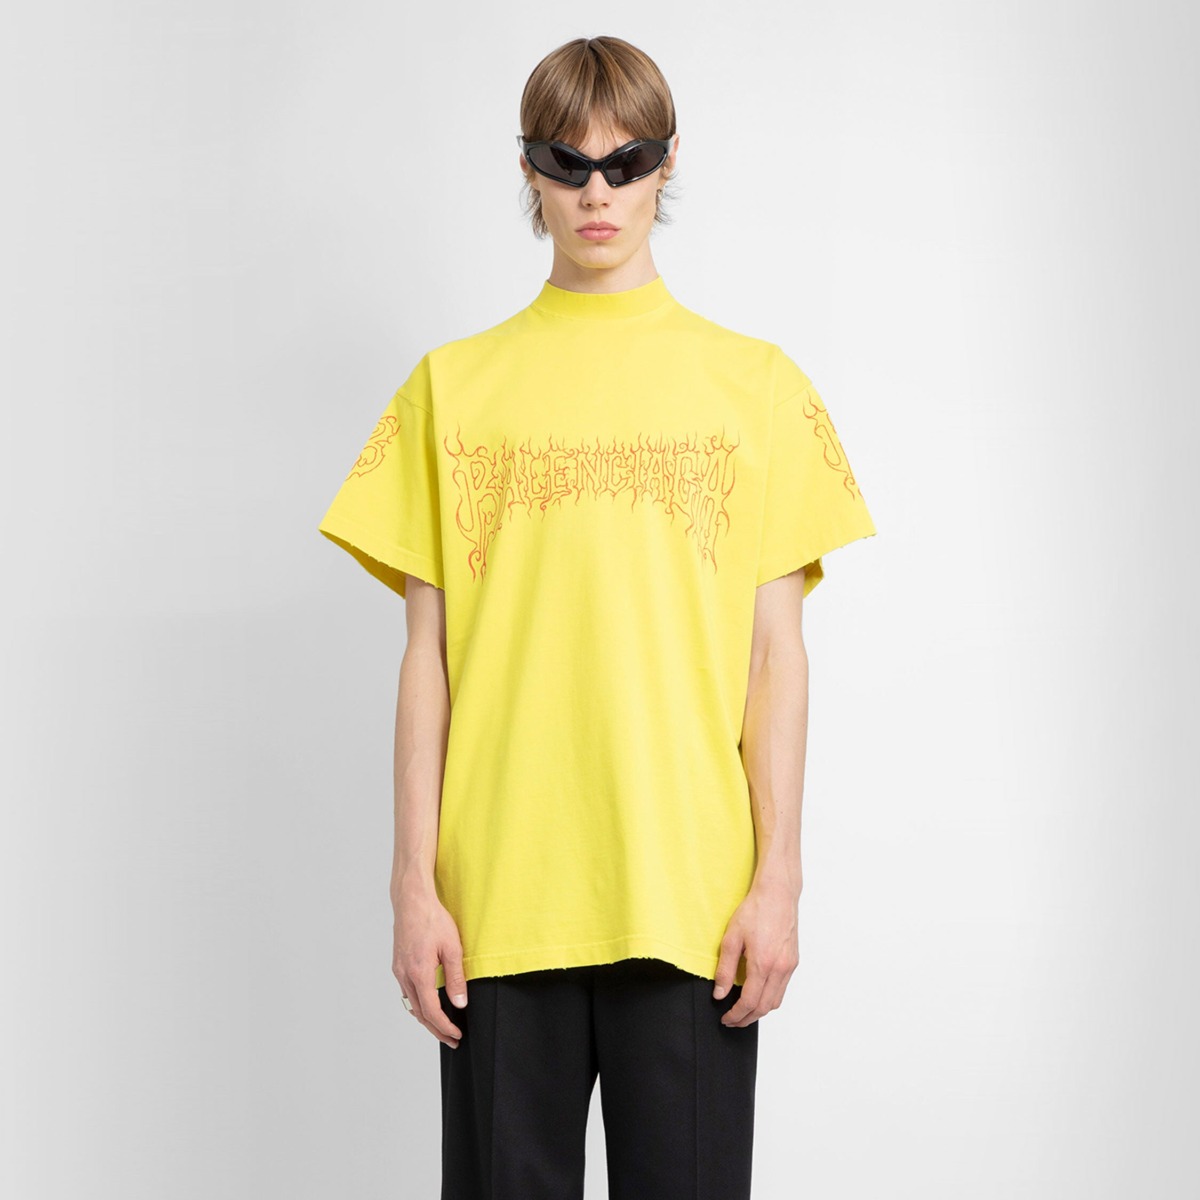 Antonioli Man T-Shirt Yellow by Balenciaga GOOFASH